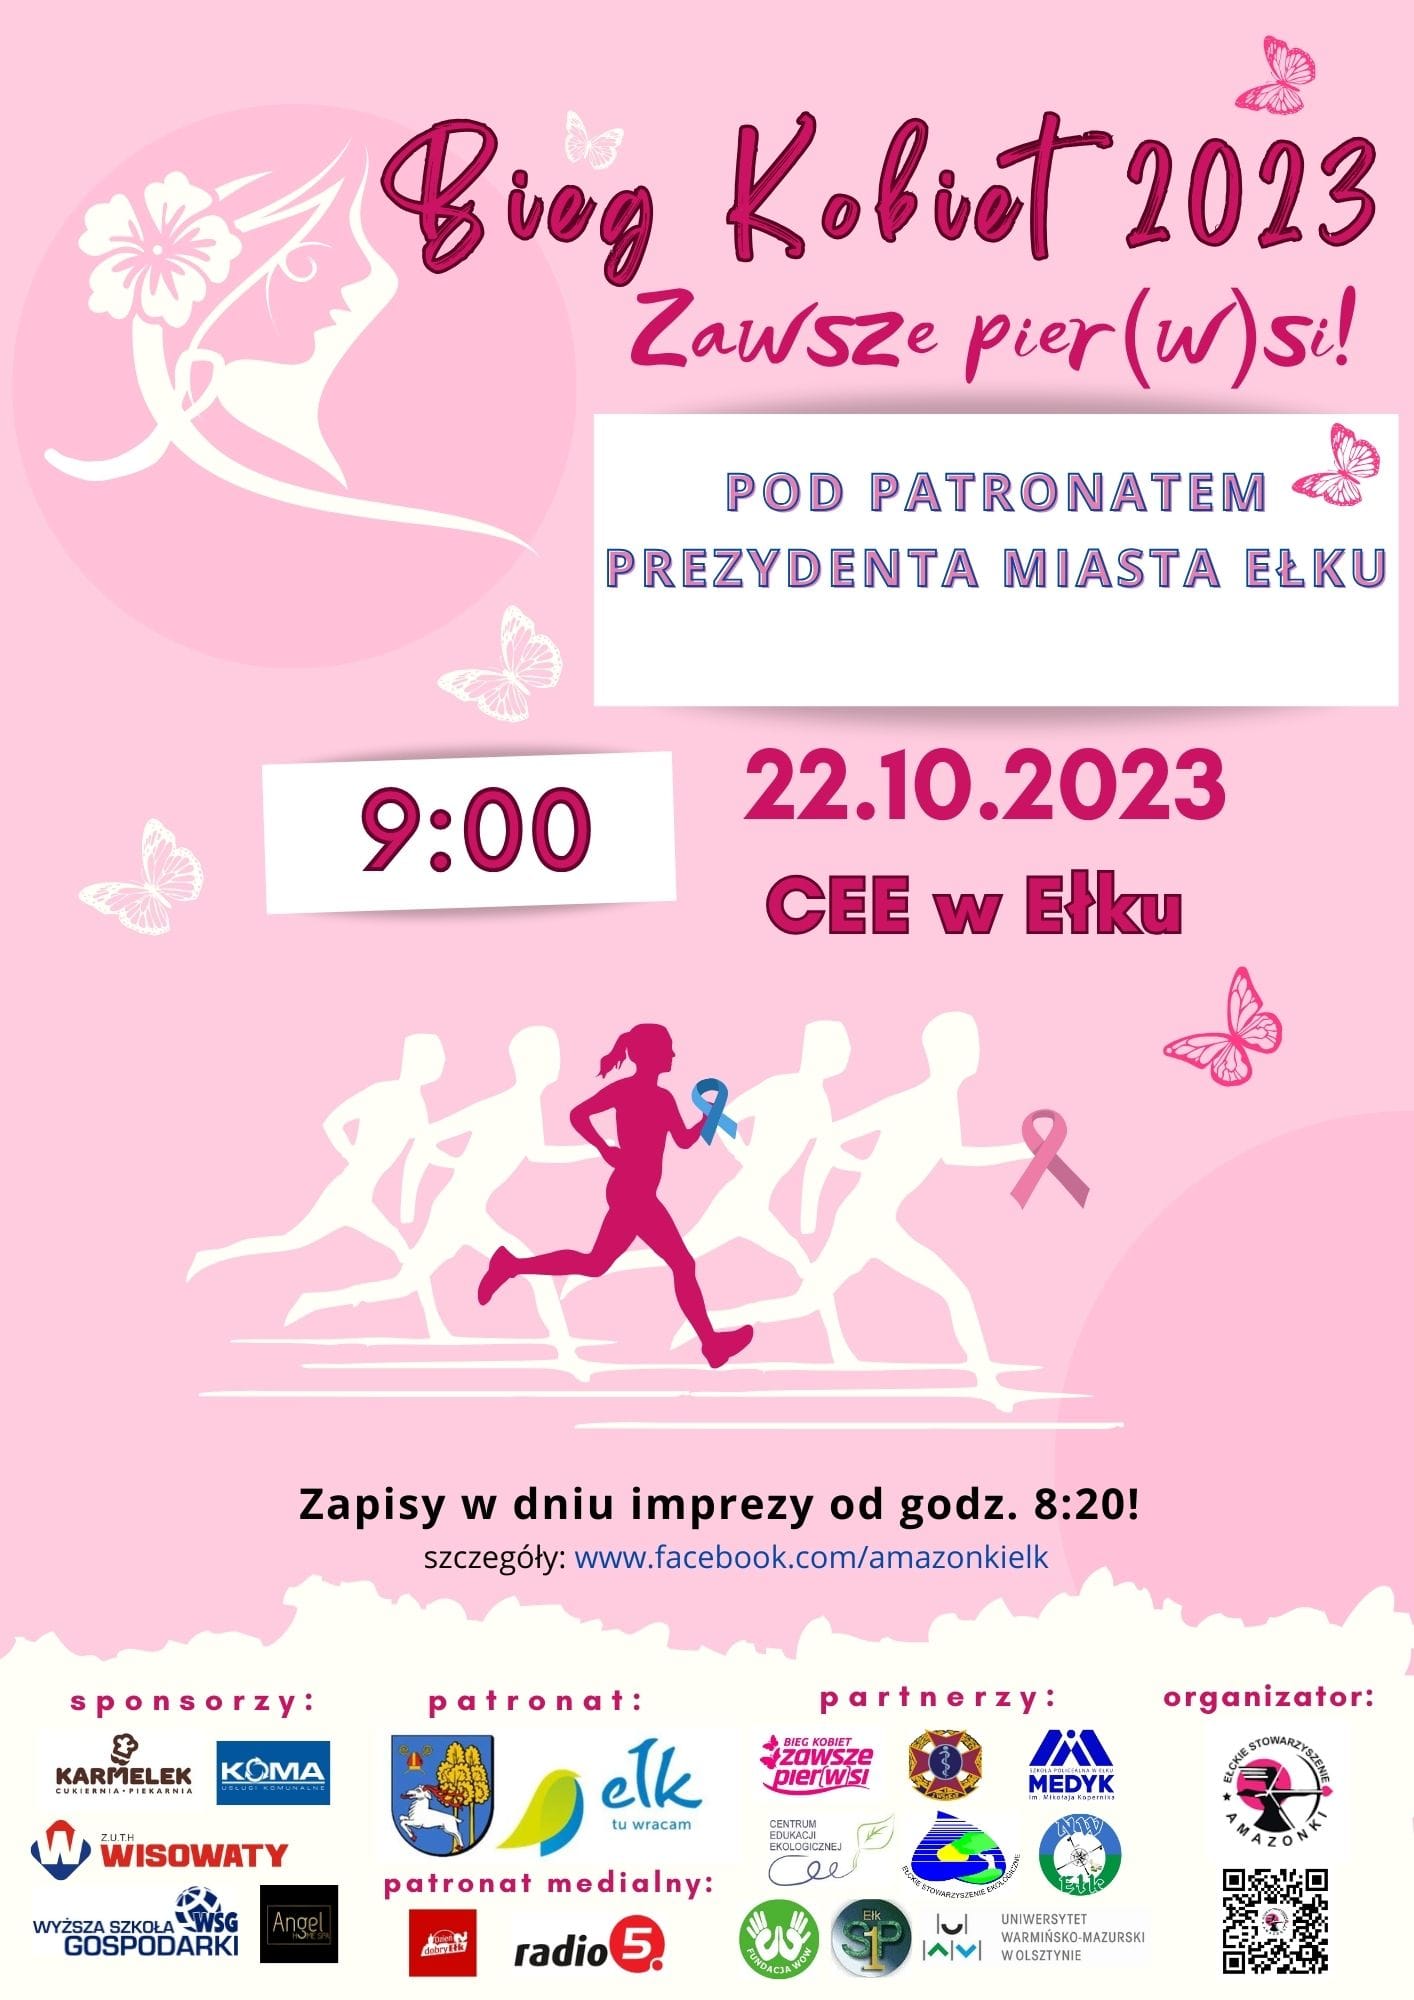 Women's Run 2023 nell'ambito della prevenzione del tumore al seno!